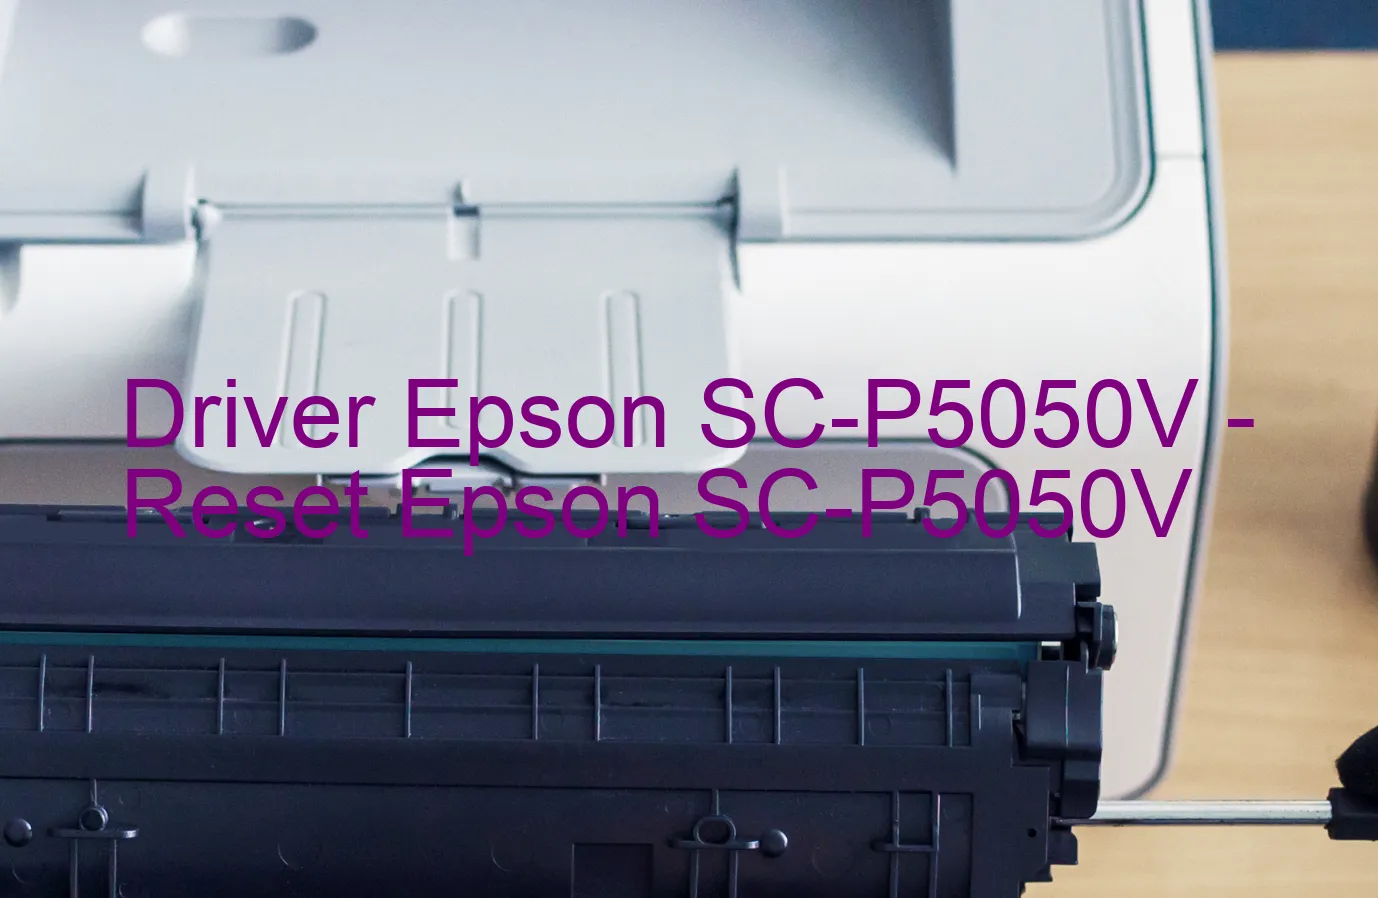 Epson SC-P5050Vのドライバー、Epson SC-P5050Vのリセットソフトウェア